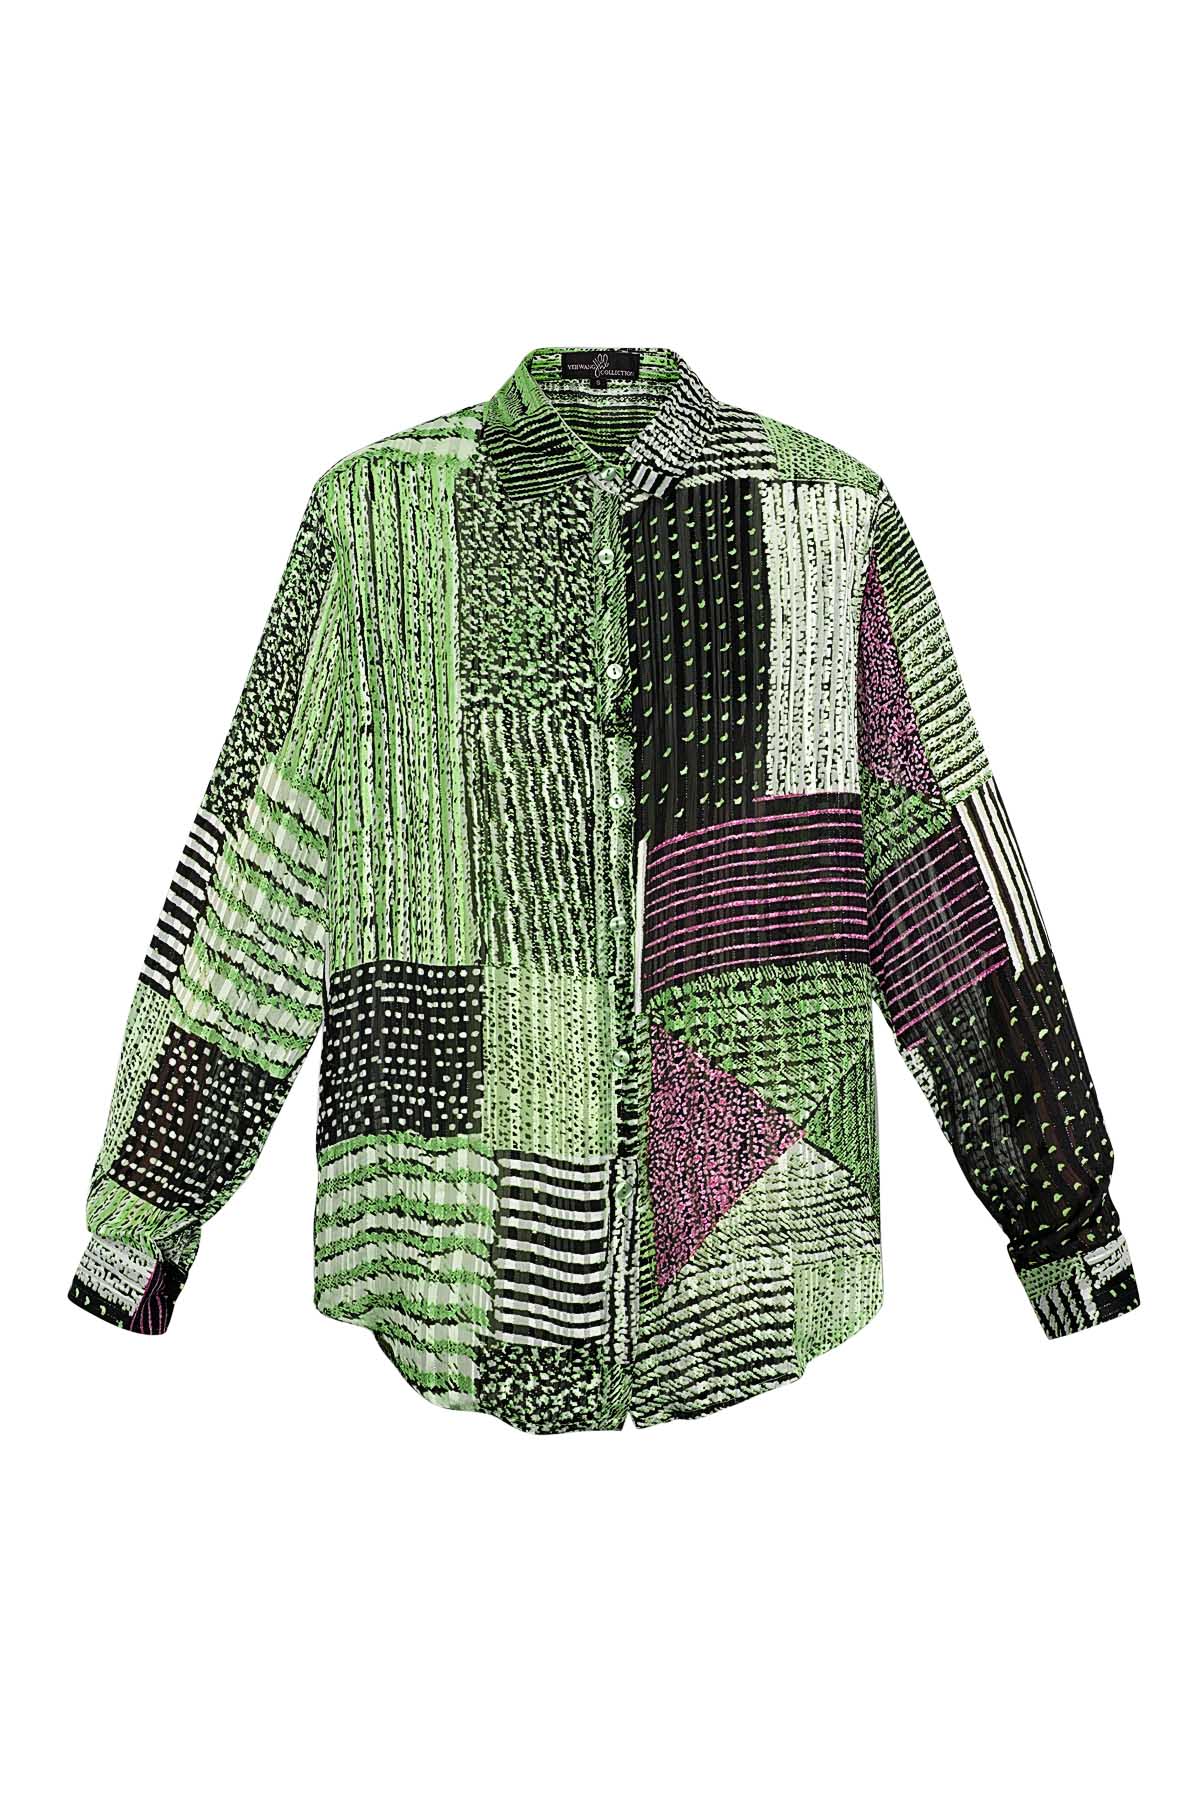 Blusa sobre top estampado verde h5 